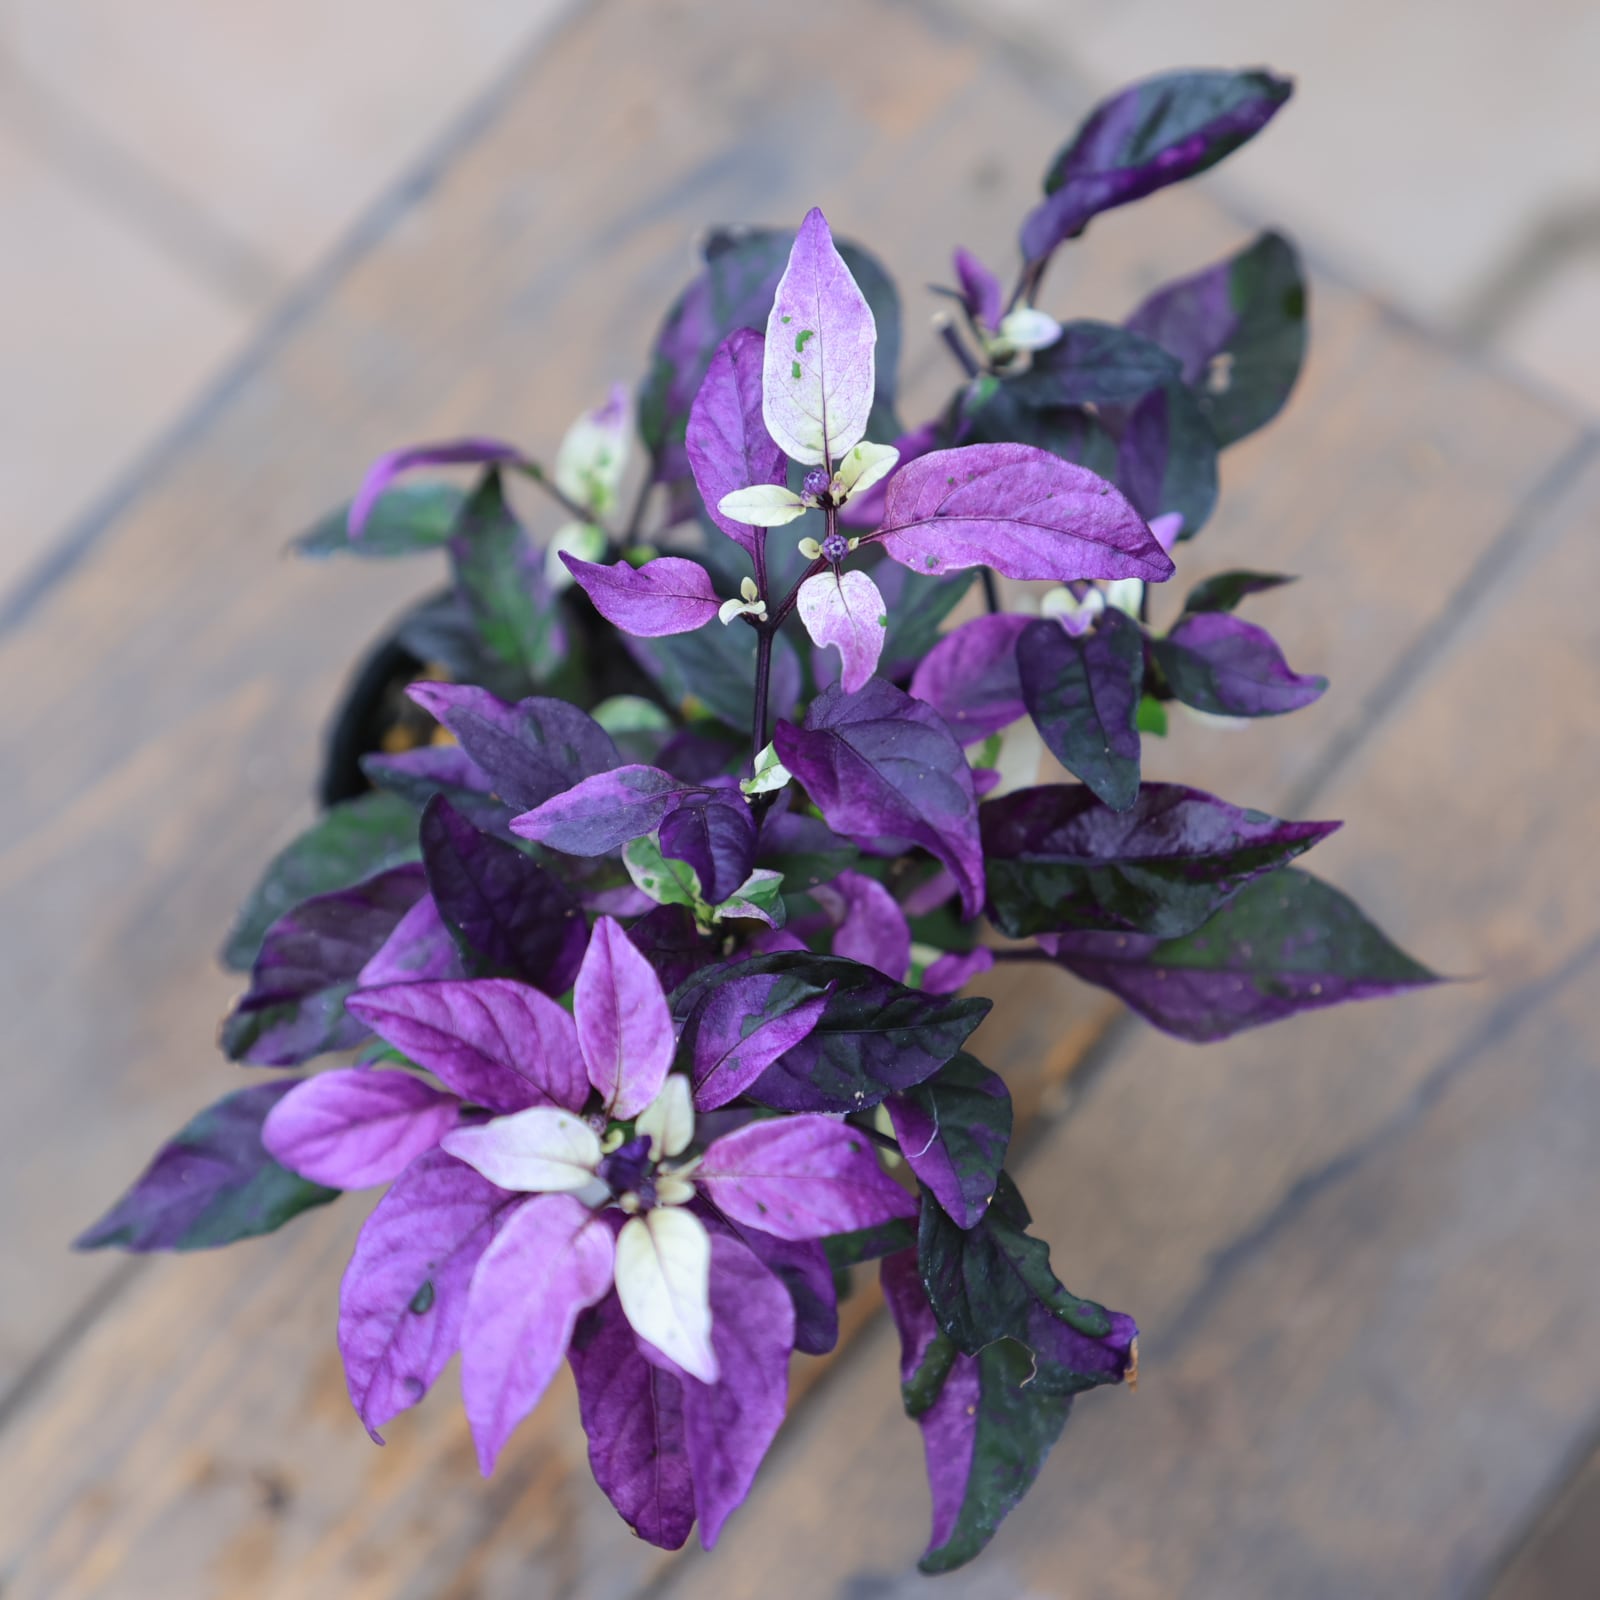 トウガラシ パープルフラッシュ○観賞用とうがらし 3号 紫の葉が美しい